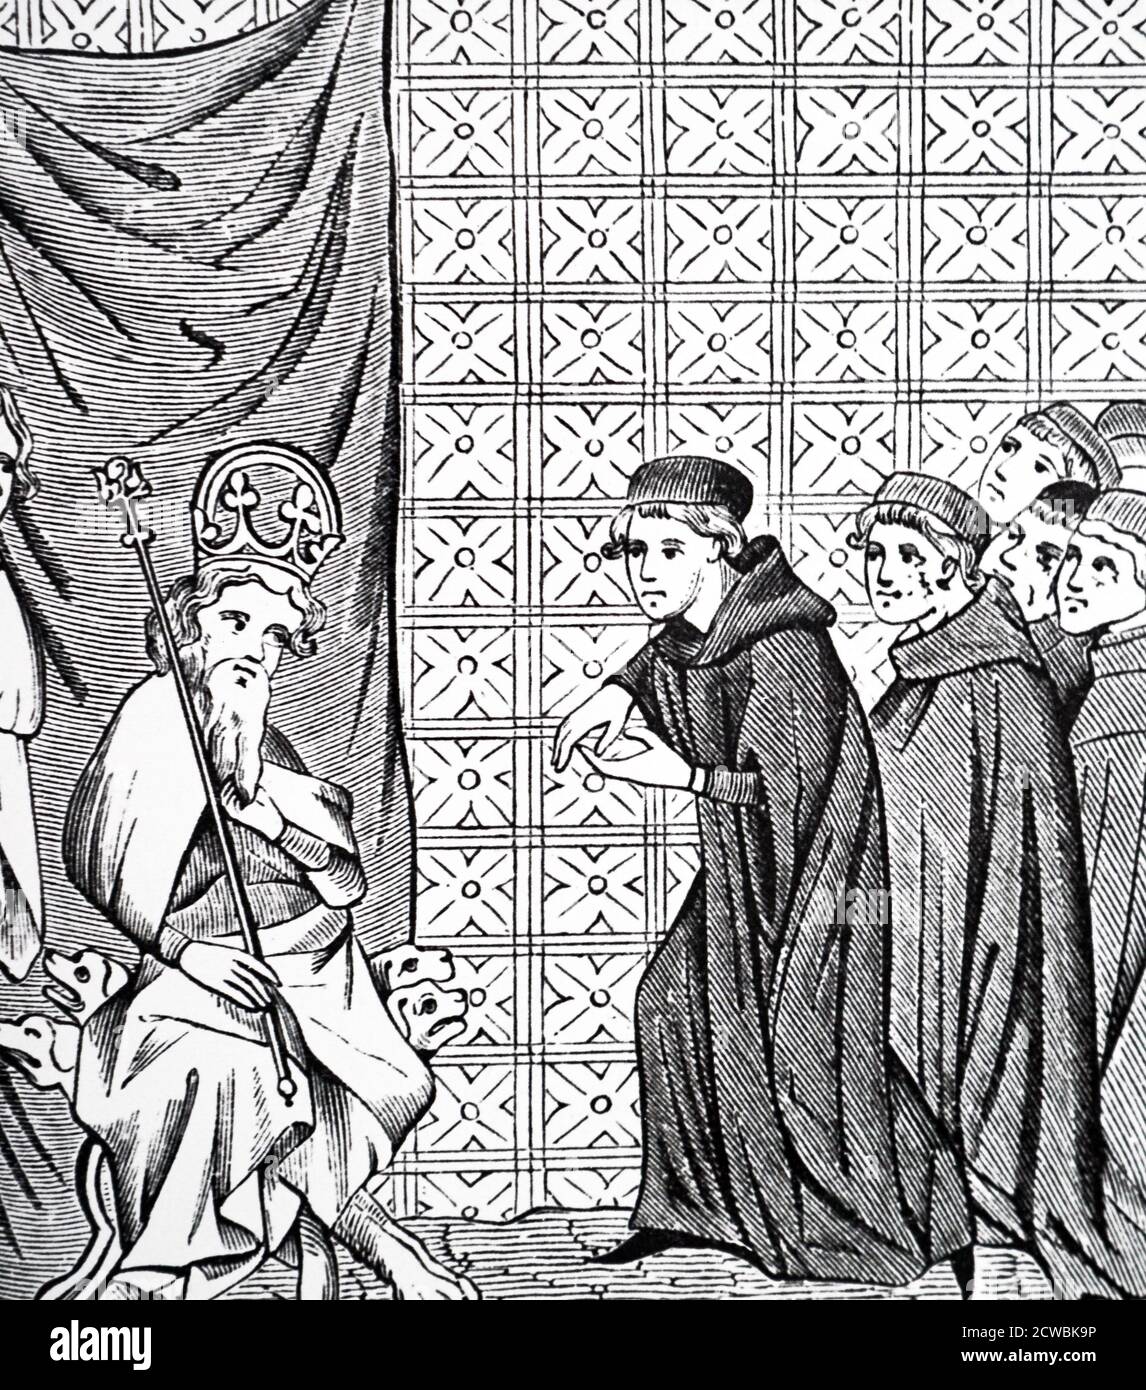 Holzschnitt, der Kaiser Karl IV. (1316-1378) darstellt, der von Fellows der Pariser Universität bedrängt wird. Stich nach Handschrift 'Chroniques de St Denis'. Stockfoto